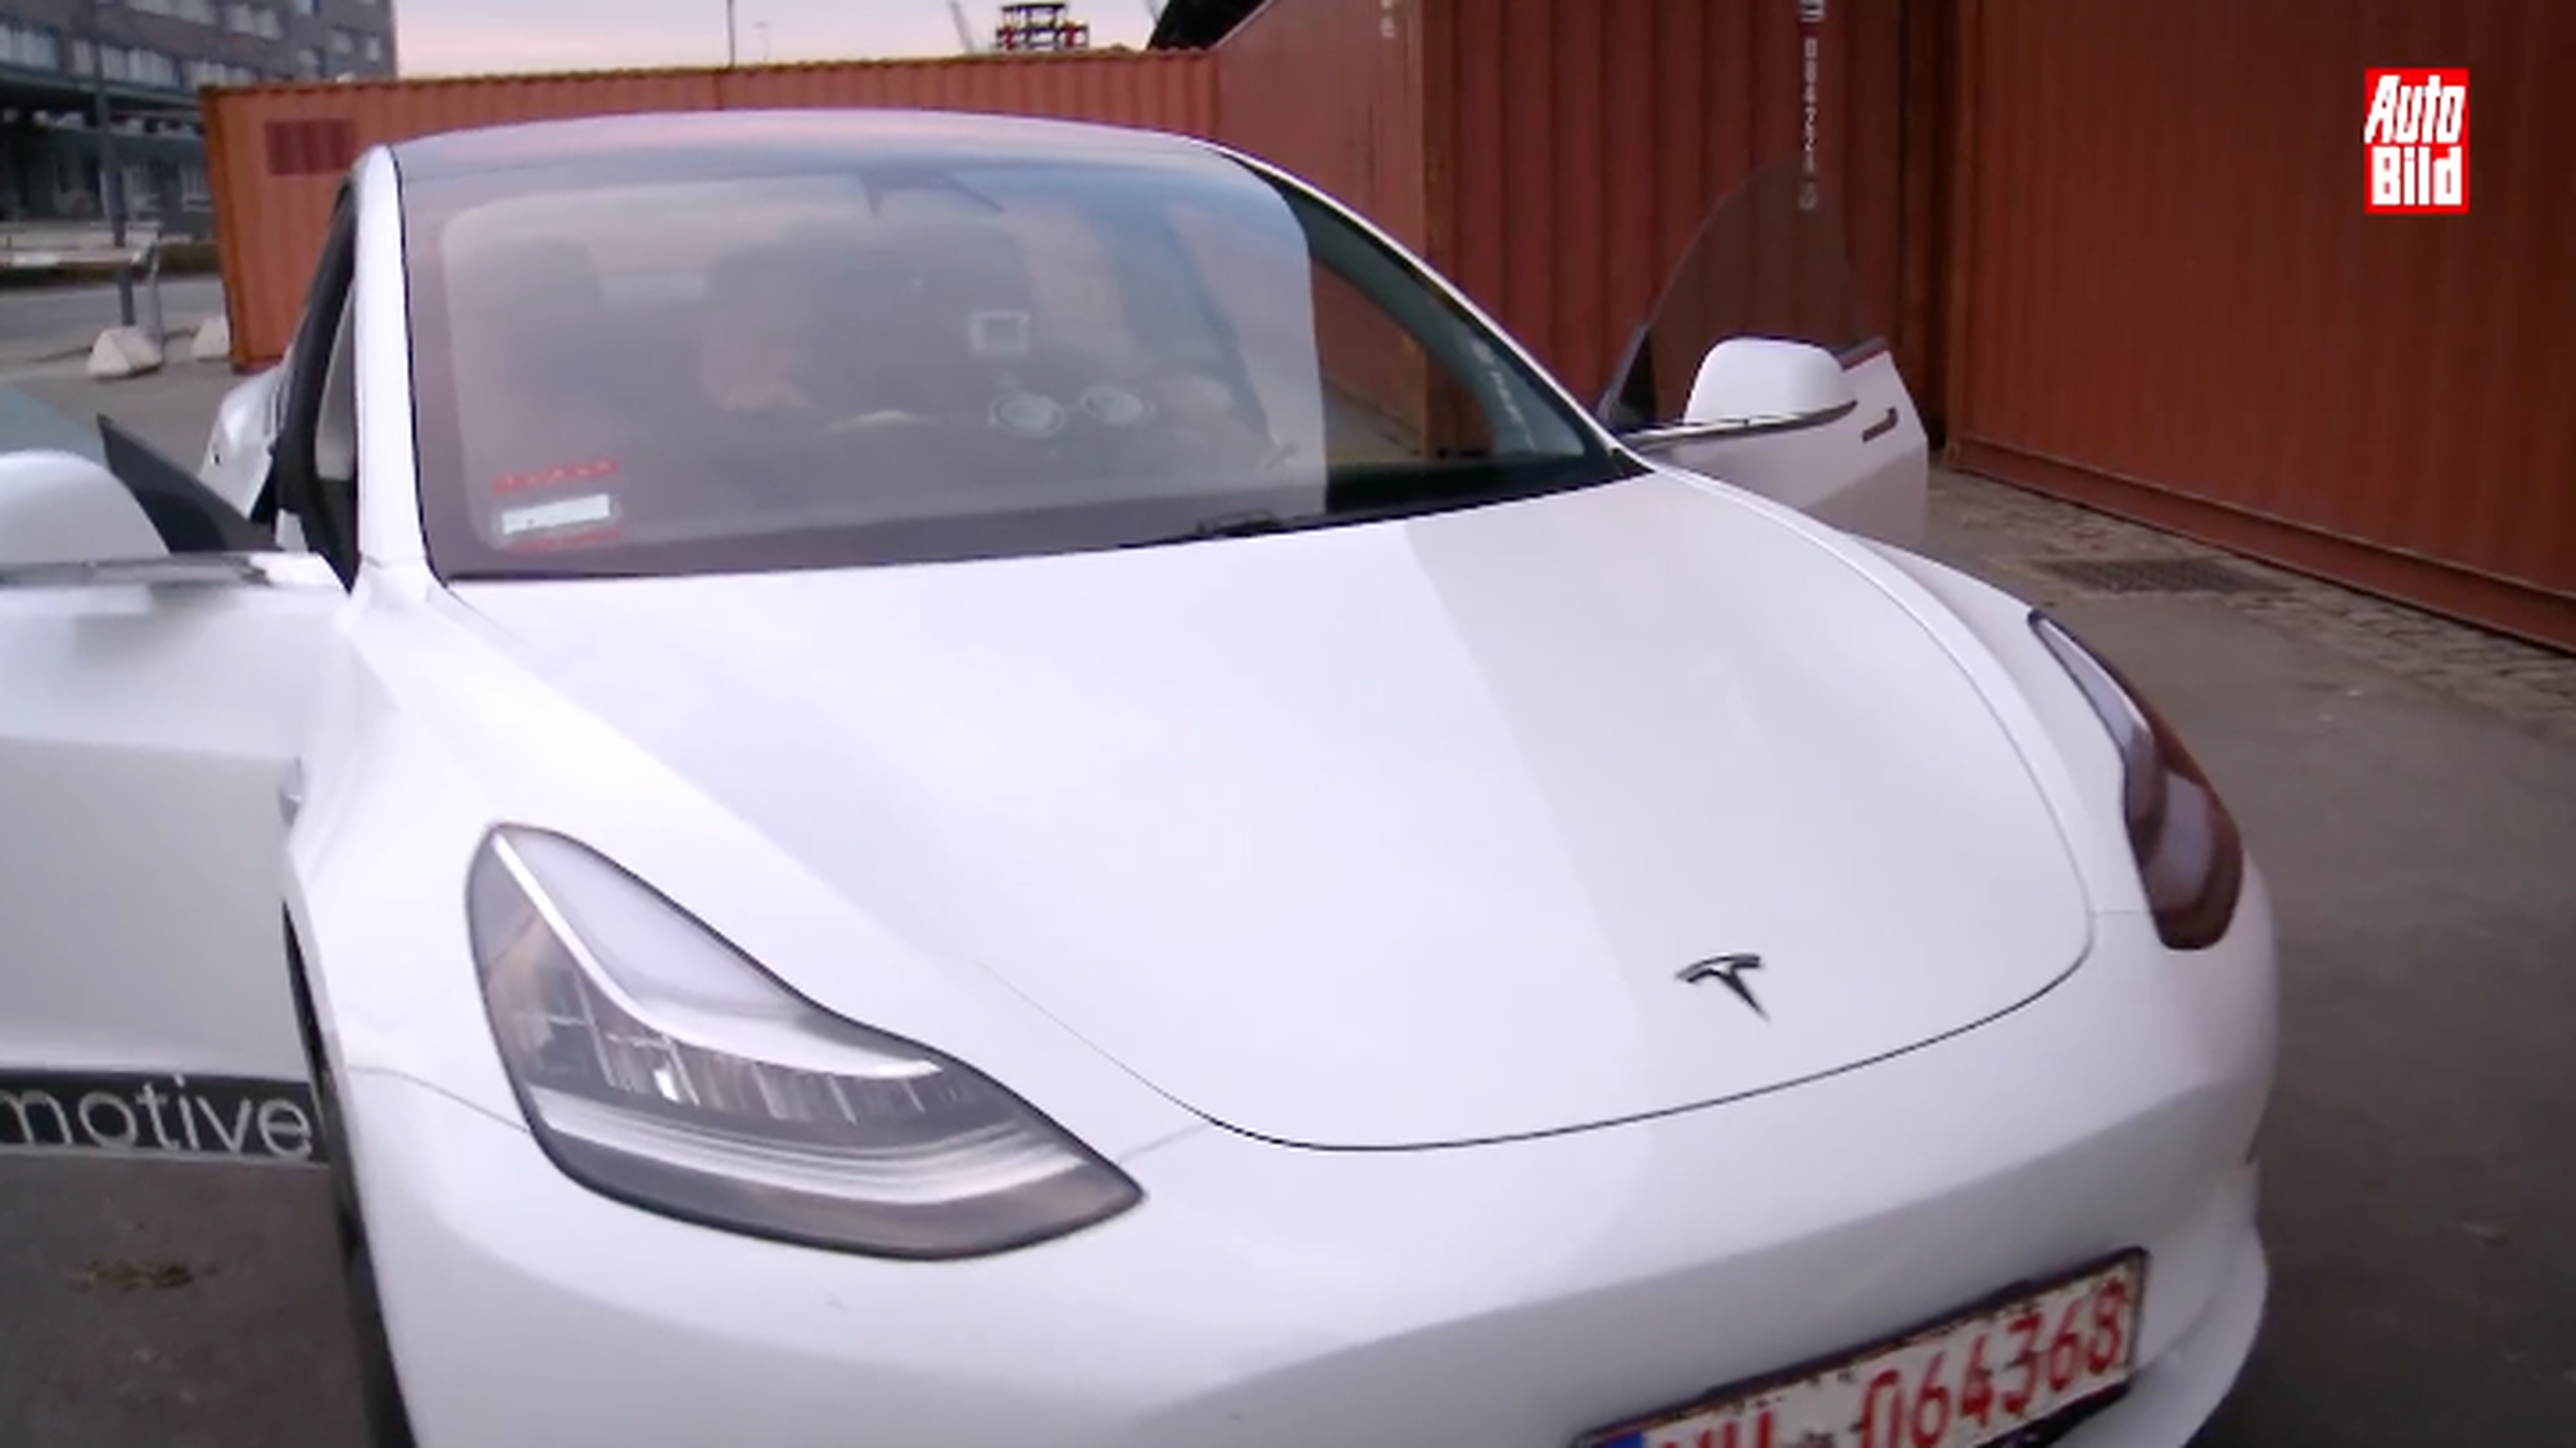 VÍDEO: lo que no nos gusta del Tesla Model 3